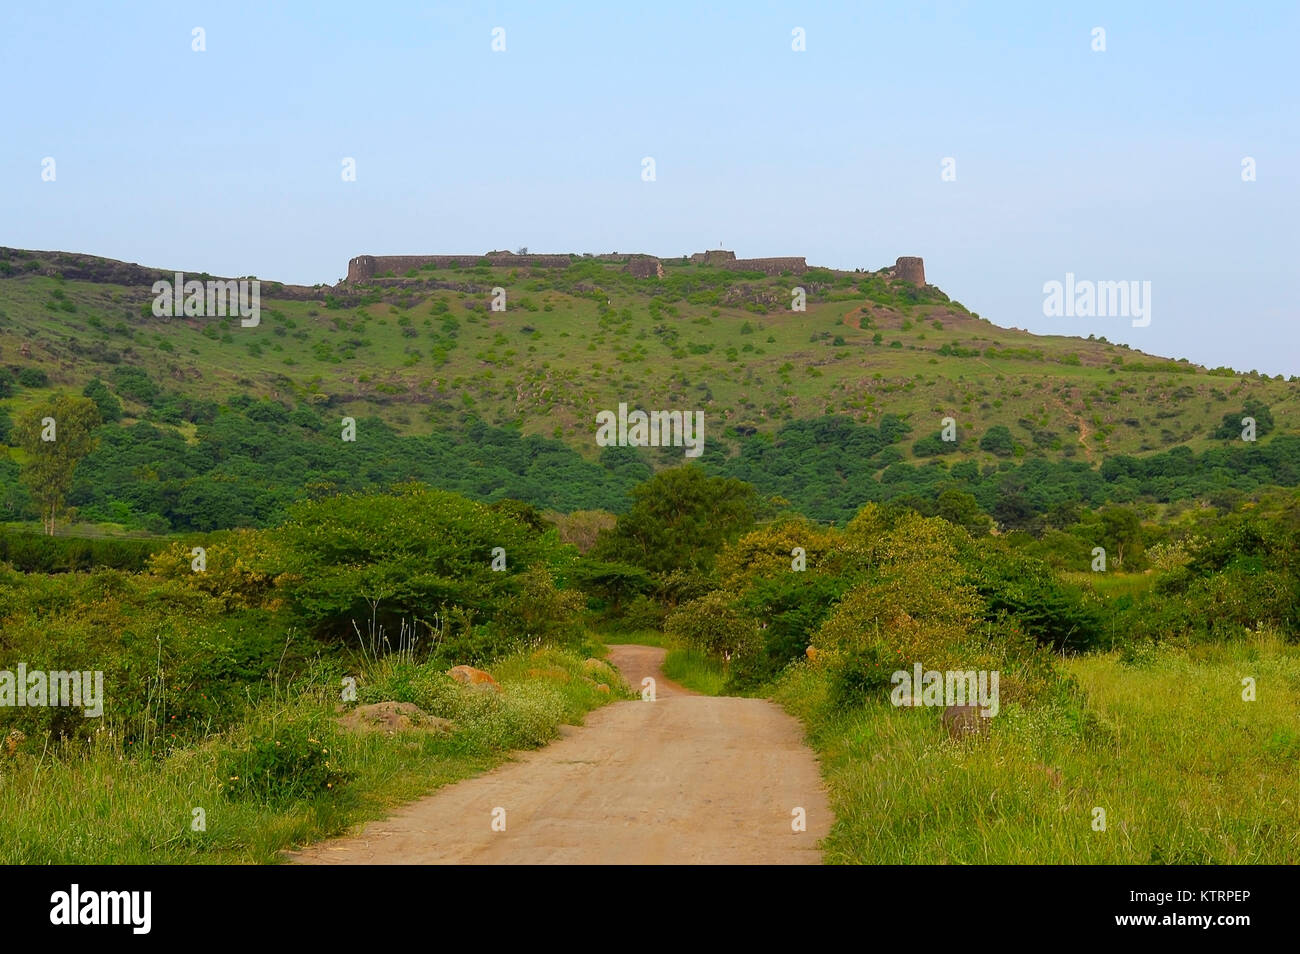 Strada per Malhargad fort, sonori fort, vicino a Saswad di Pune. Malhargad è una collina fort in India occidentale vicino a Saswad, 30 chilometri (19 mi) da Pune. È Foto Stock